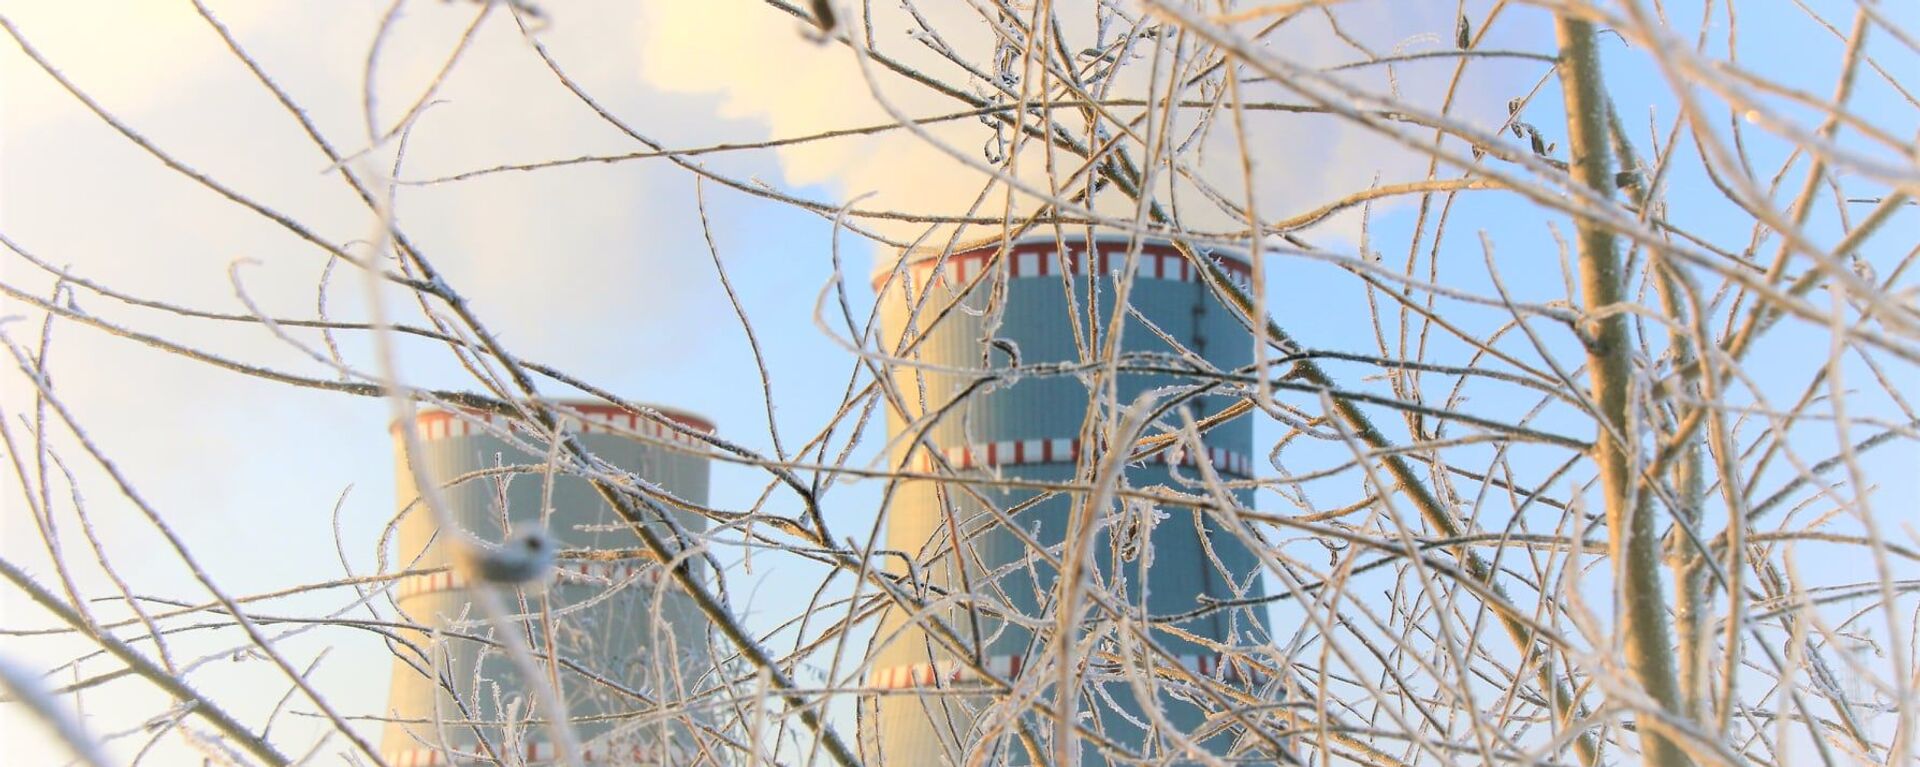 Белорусская атомная электростанция зимой - Sputnik Латвия, 1920, 17.02.2021